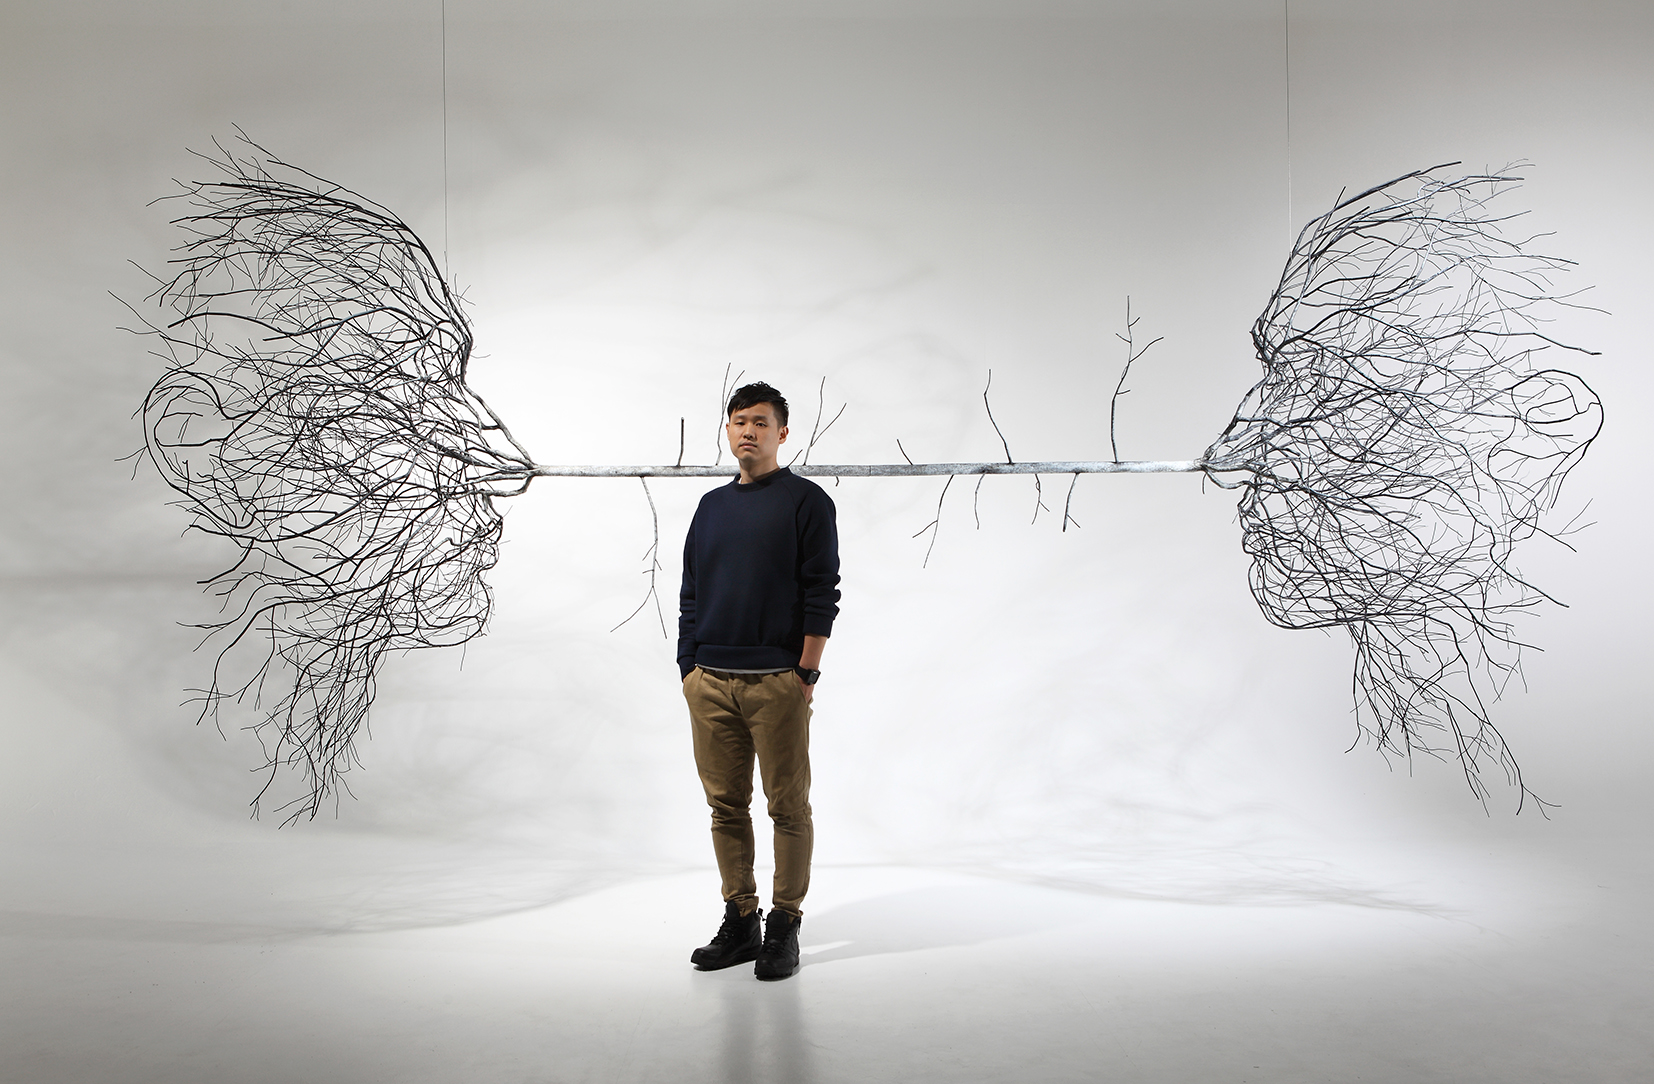 Man Vs. Nature: the Science Fiction Artwork of Sun-Hyuk Kim